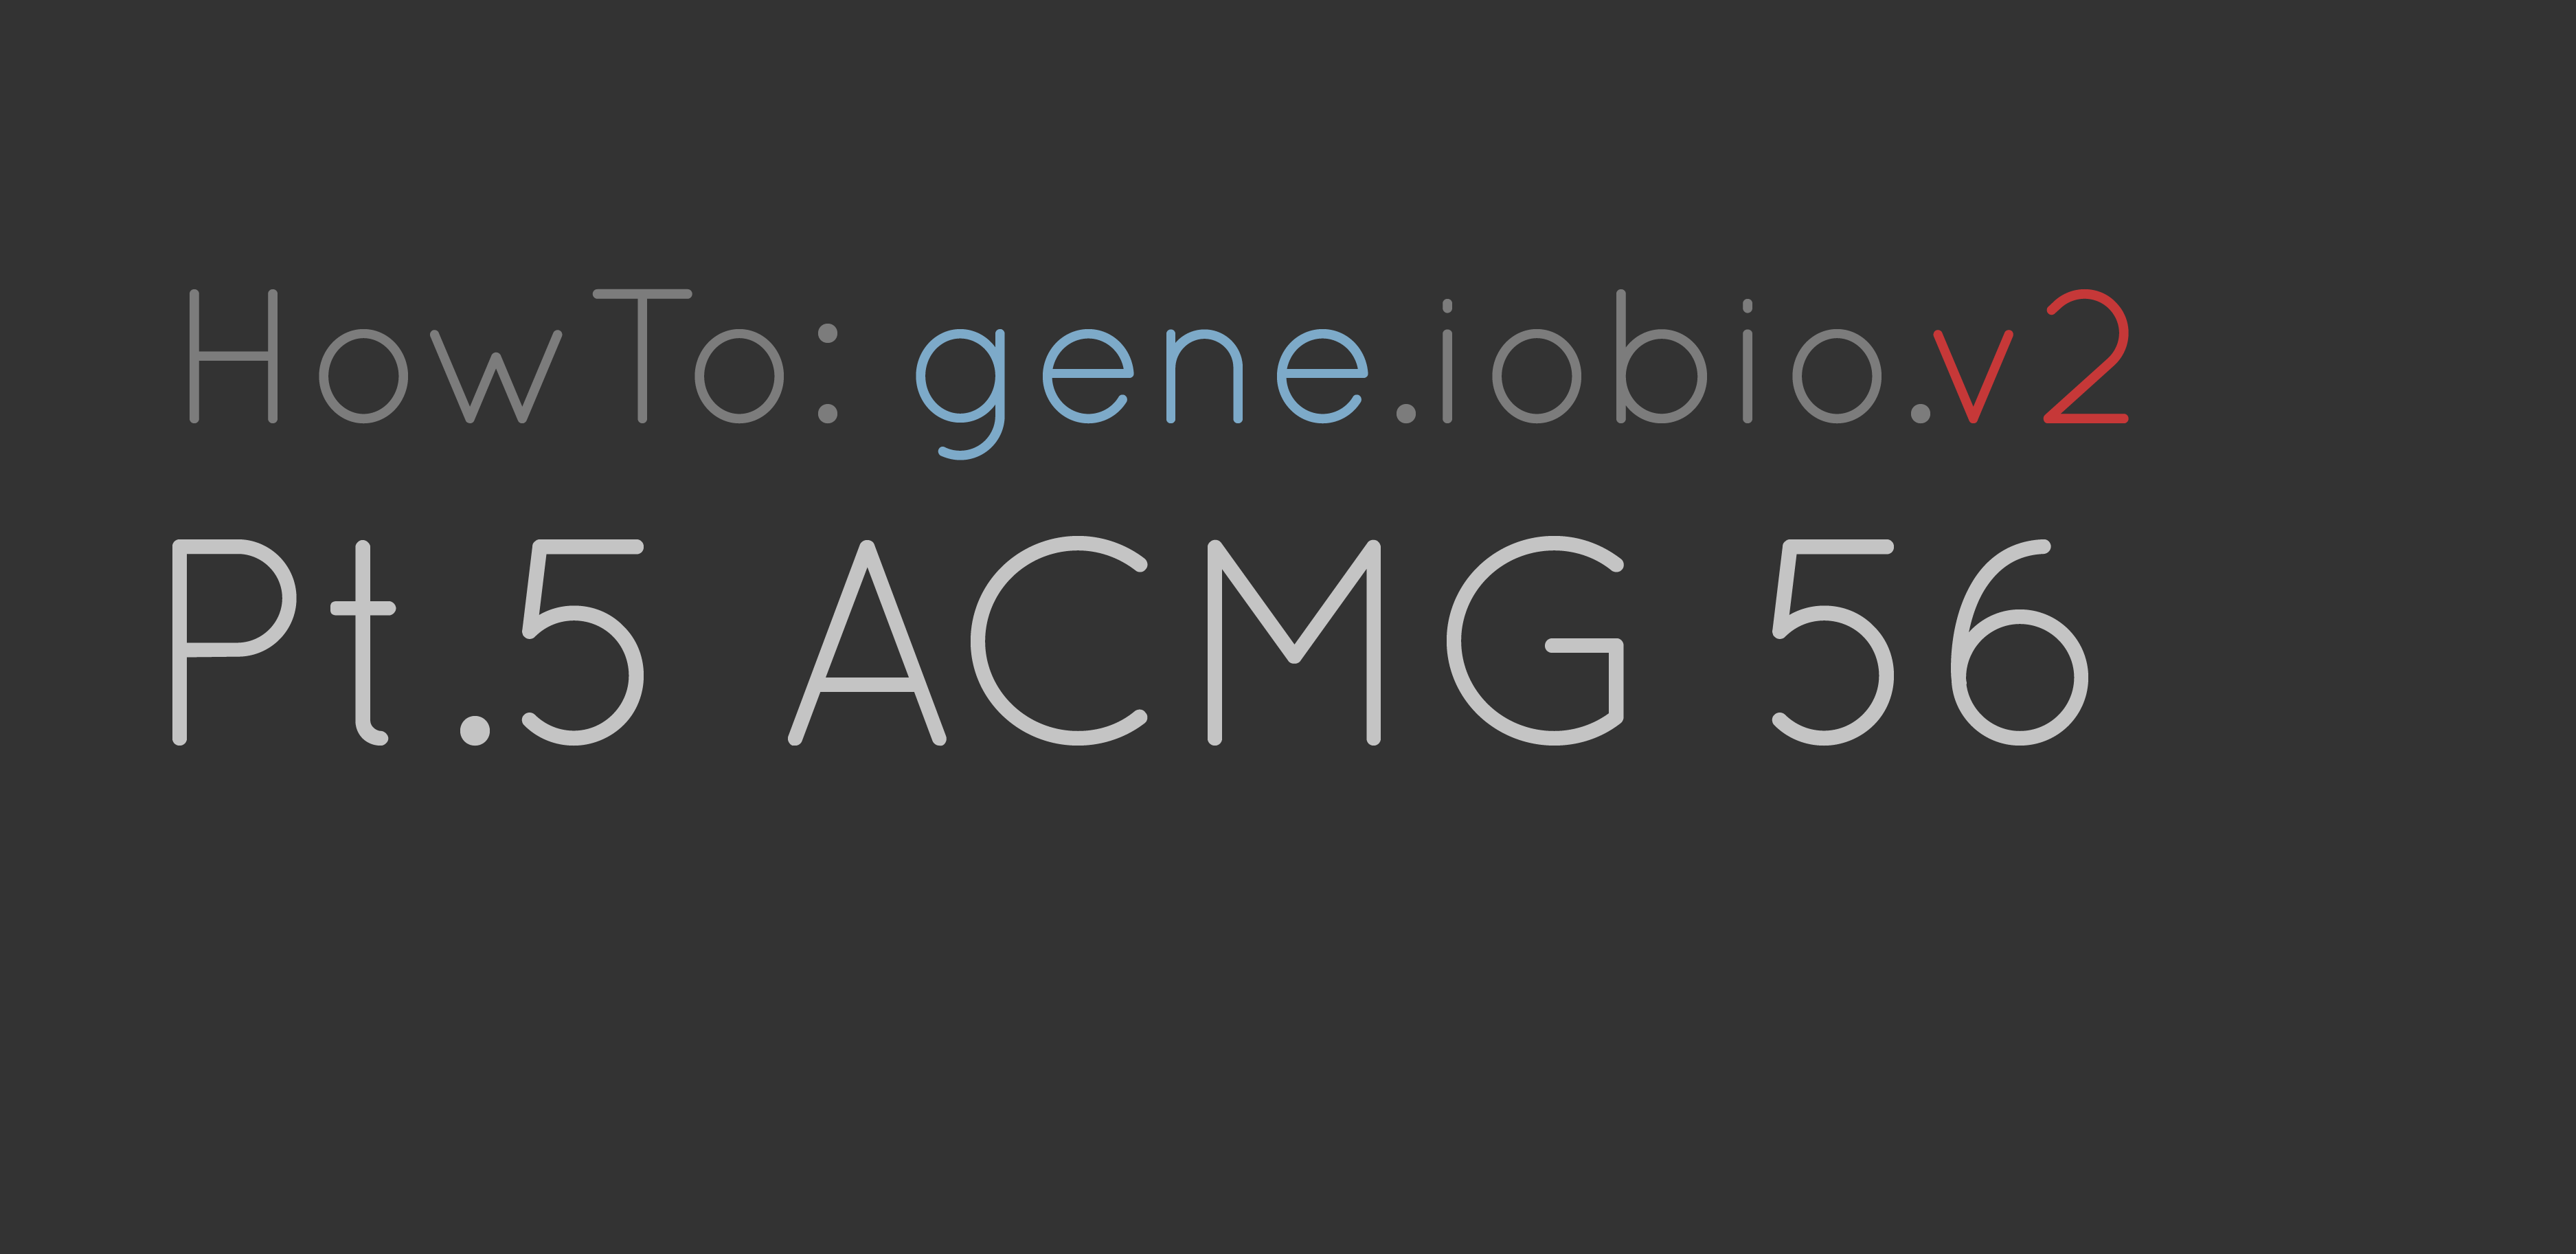 ACMG 56 genes